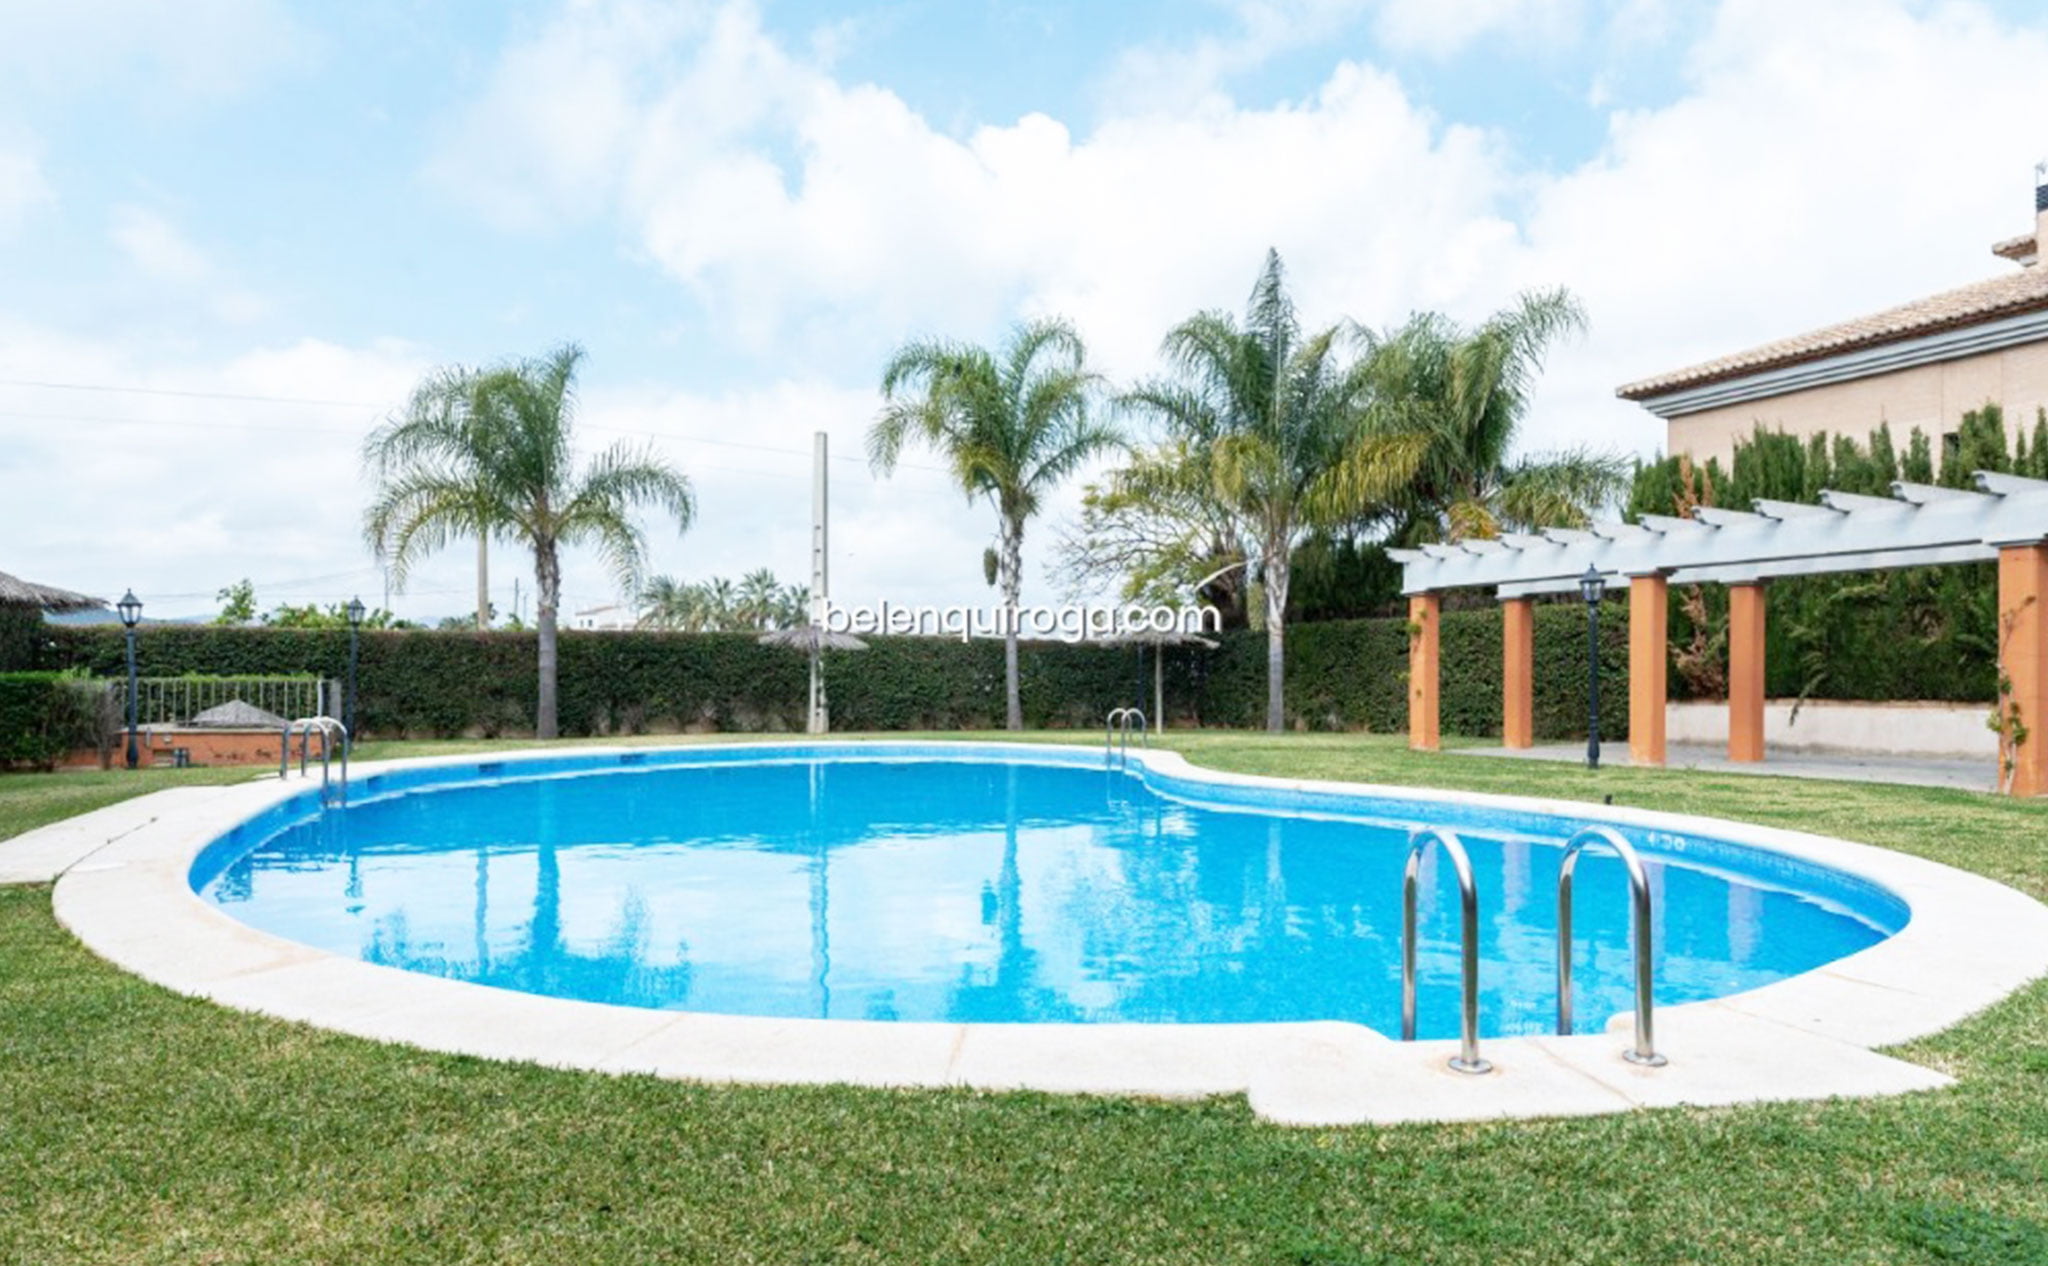 Bonita piscina en la zona común de un apartamento en venta en Jávea – Inmobiliaria Belen Quiroga